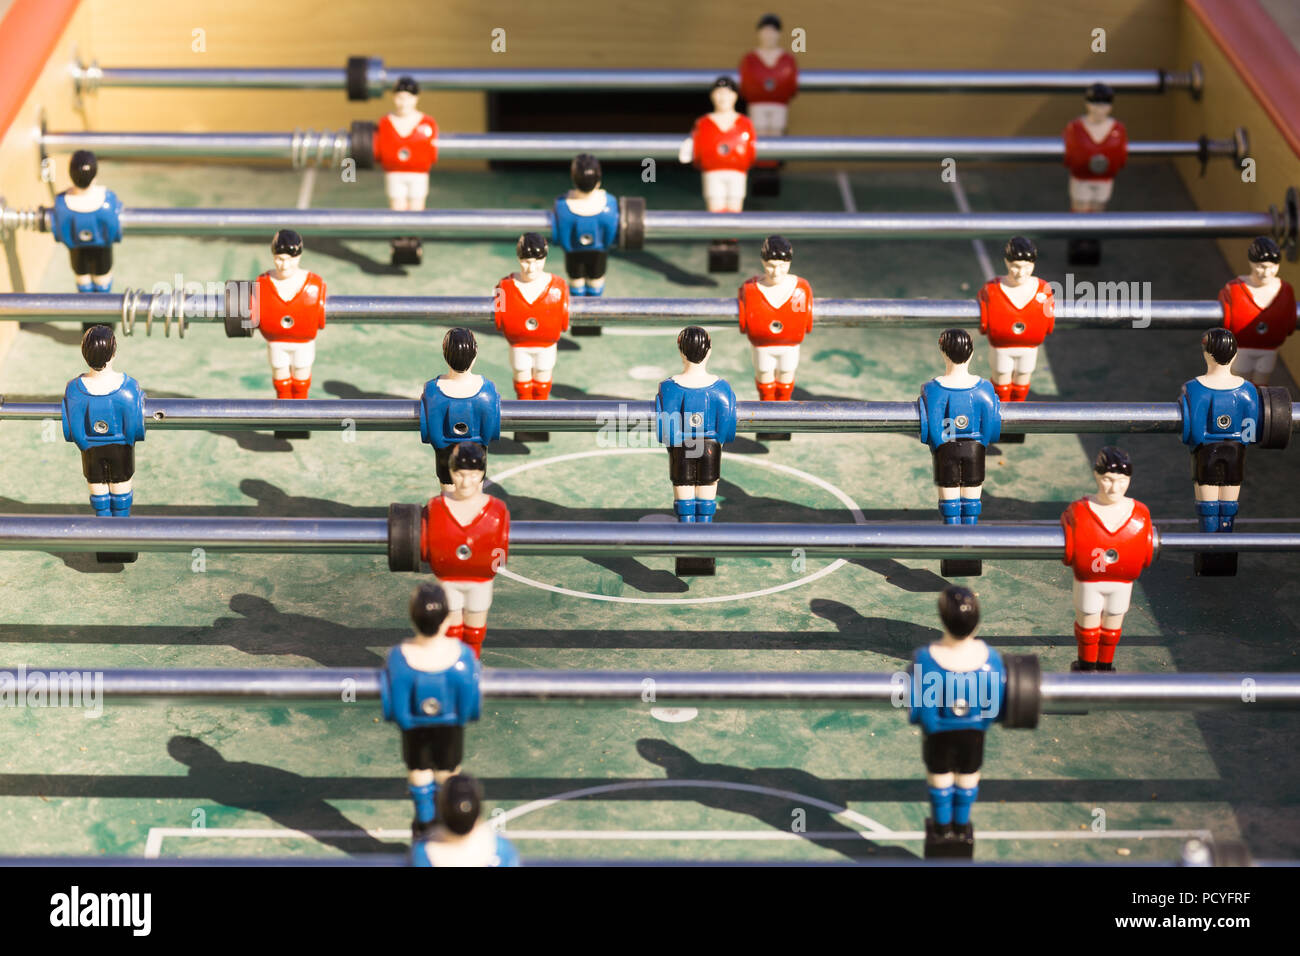 Nahaufnahme von Tischfußball (Kicker) mit Spielern in den Farben rot und blau Shirts. Stockfoto